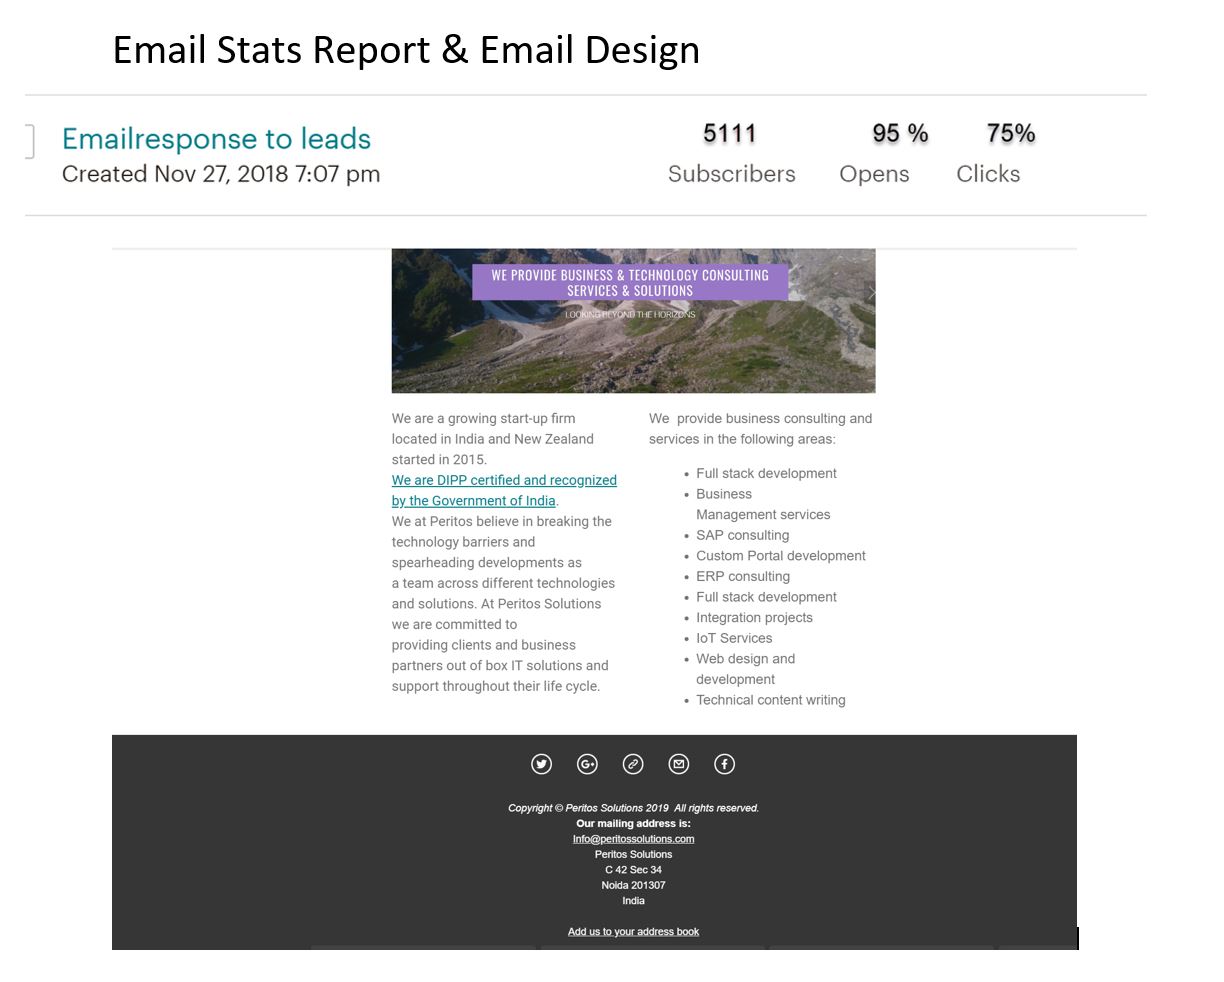 Email design